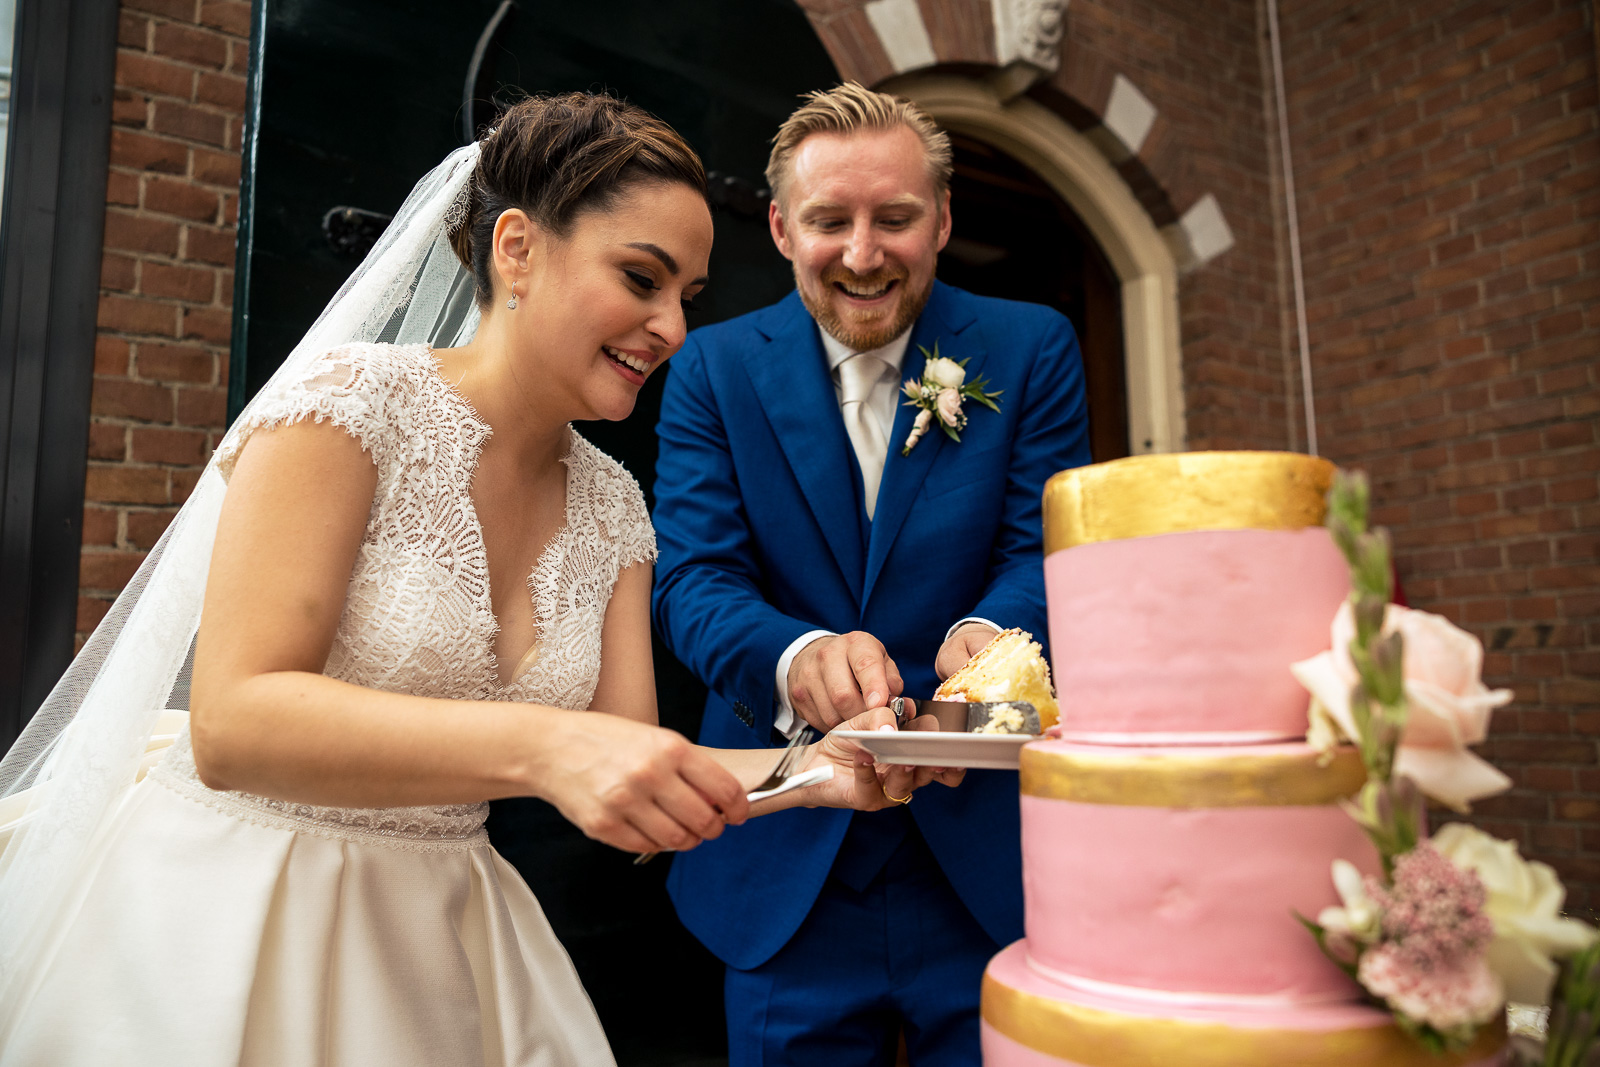 Taart moment bruidspaar tijdens receptie door trouwfotograaf Den Haag